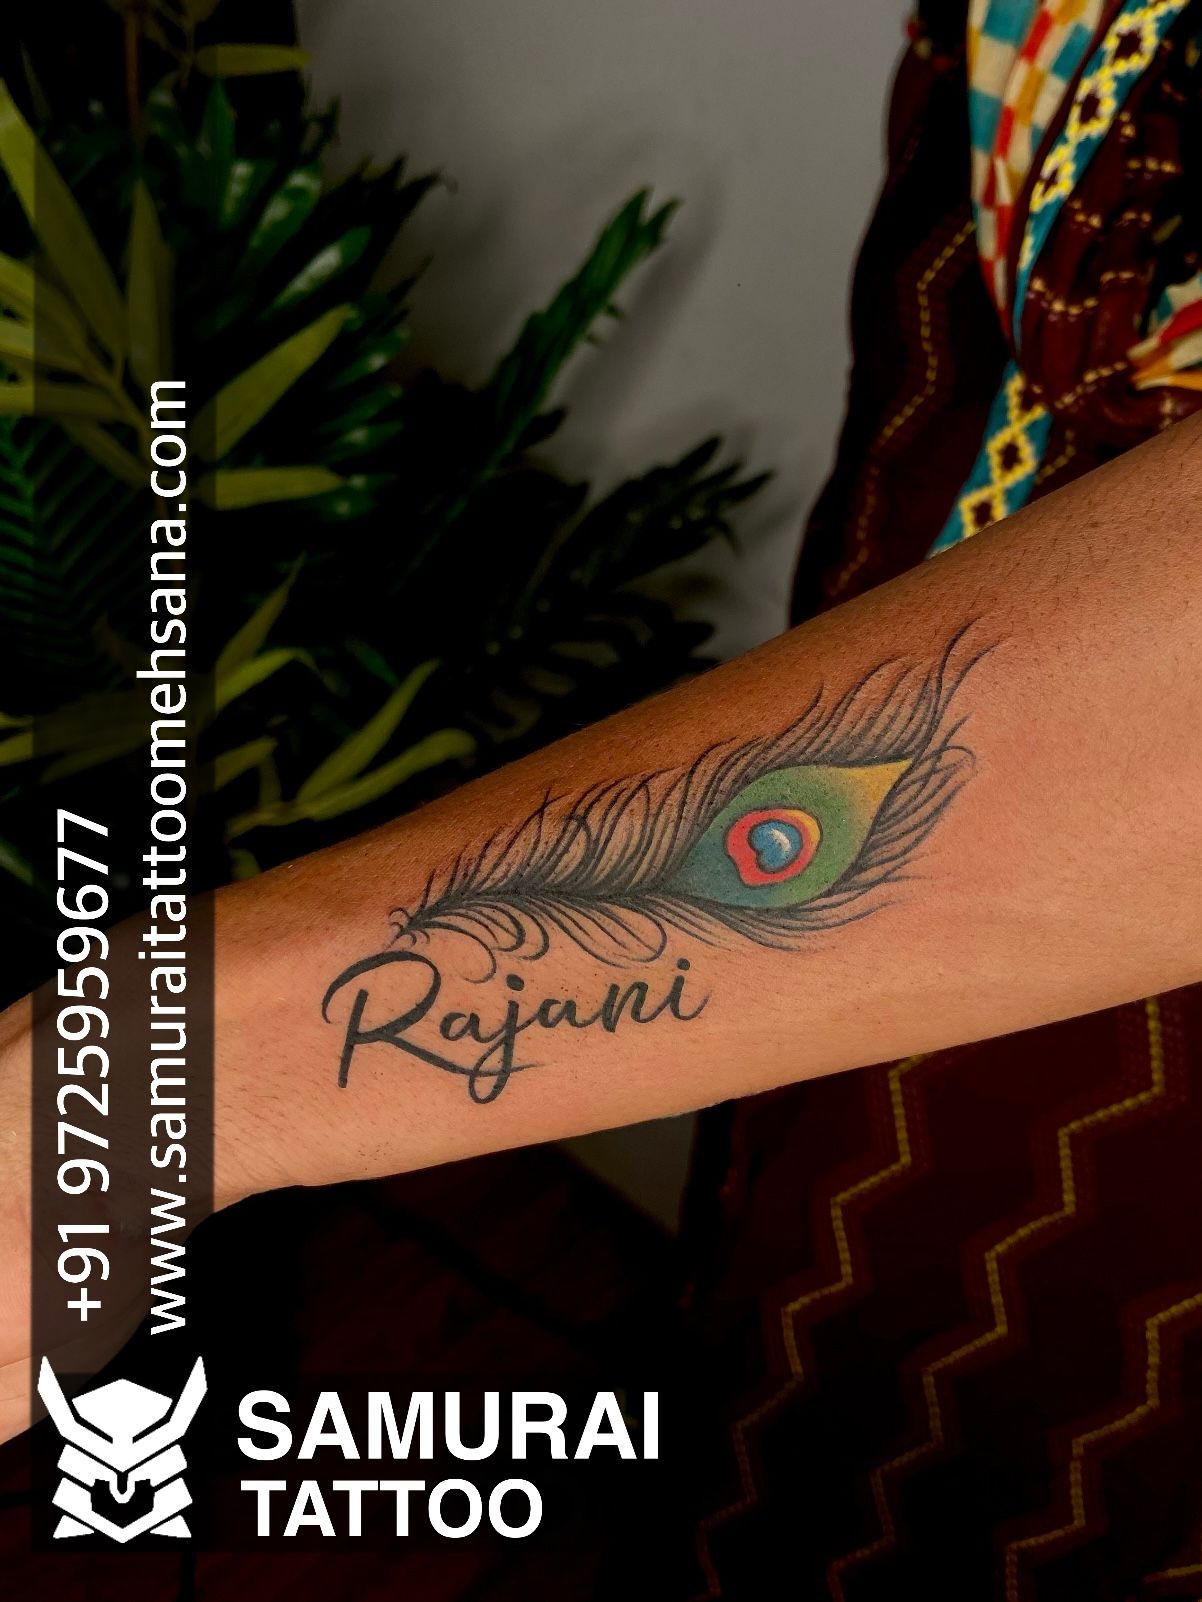 Name tattoo || Sandeep name tattoo || | Name tattoo designs, Hand tattoos  for women, Name tattoo